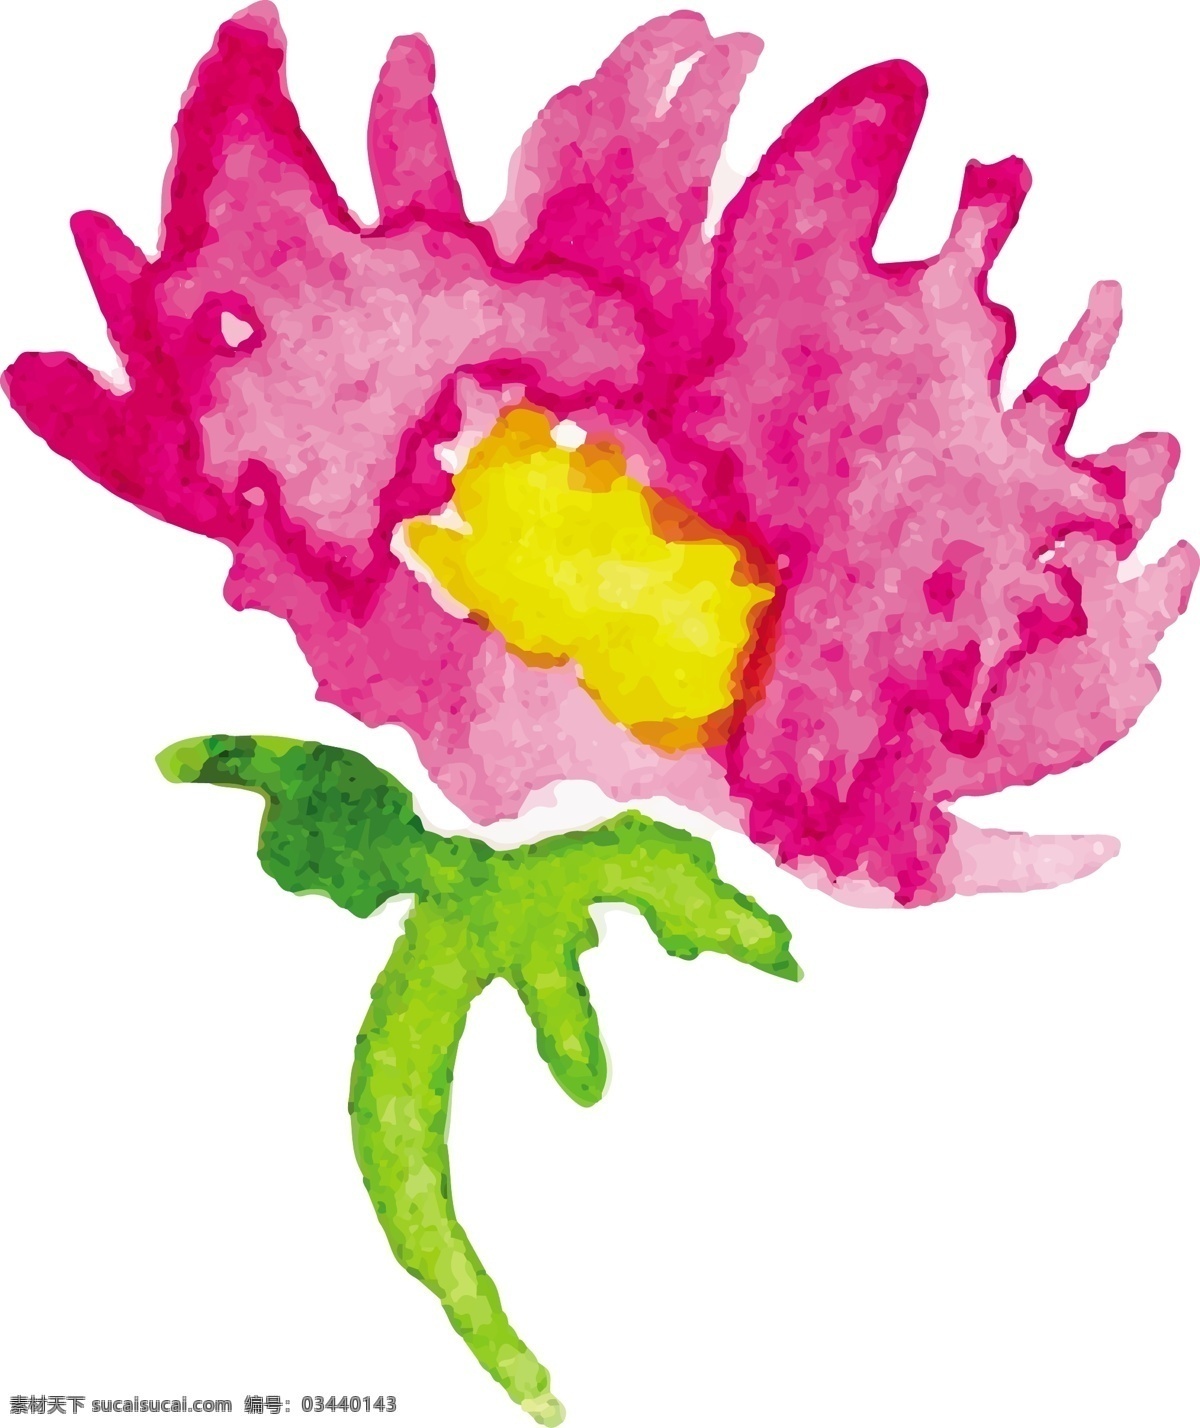 手绘 紫色 小花 矢量 花朵 卡通 可爱 设计素材 矢量素材